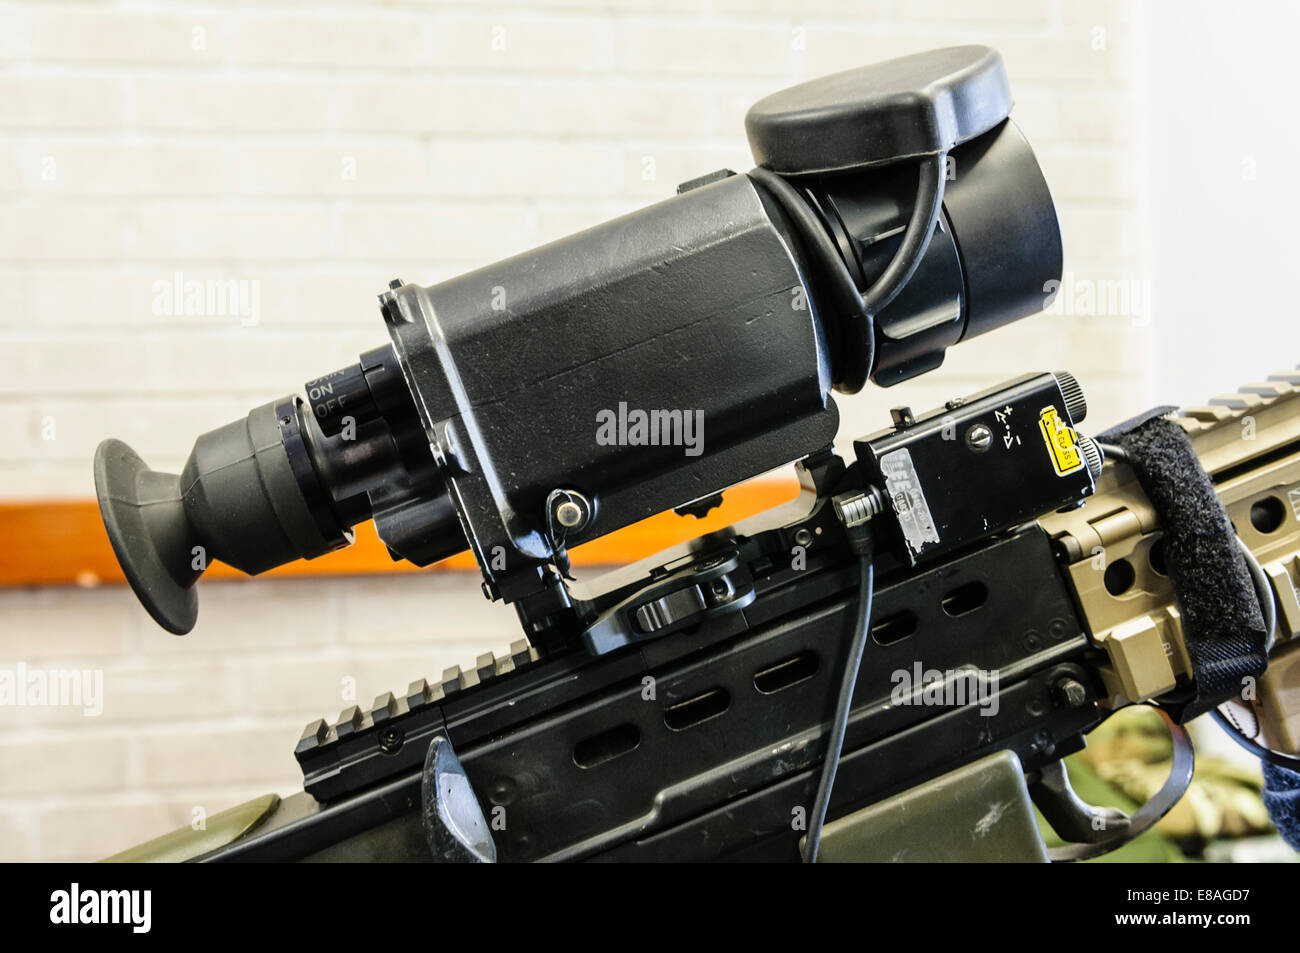 VIPIR2-S Thermal Imaging Anblick ausgestattet, um ein Sturmgewehr SA-80 L2, von der britischen Armee eingesetzt. Stockfoto